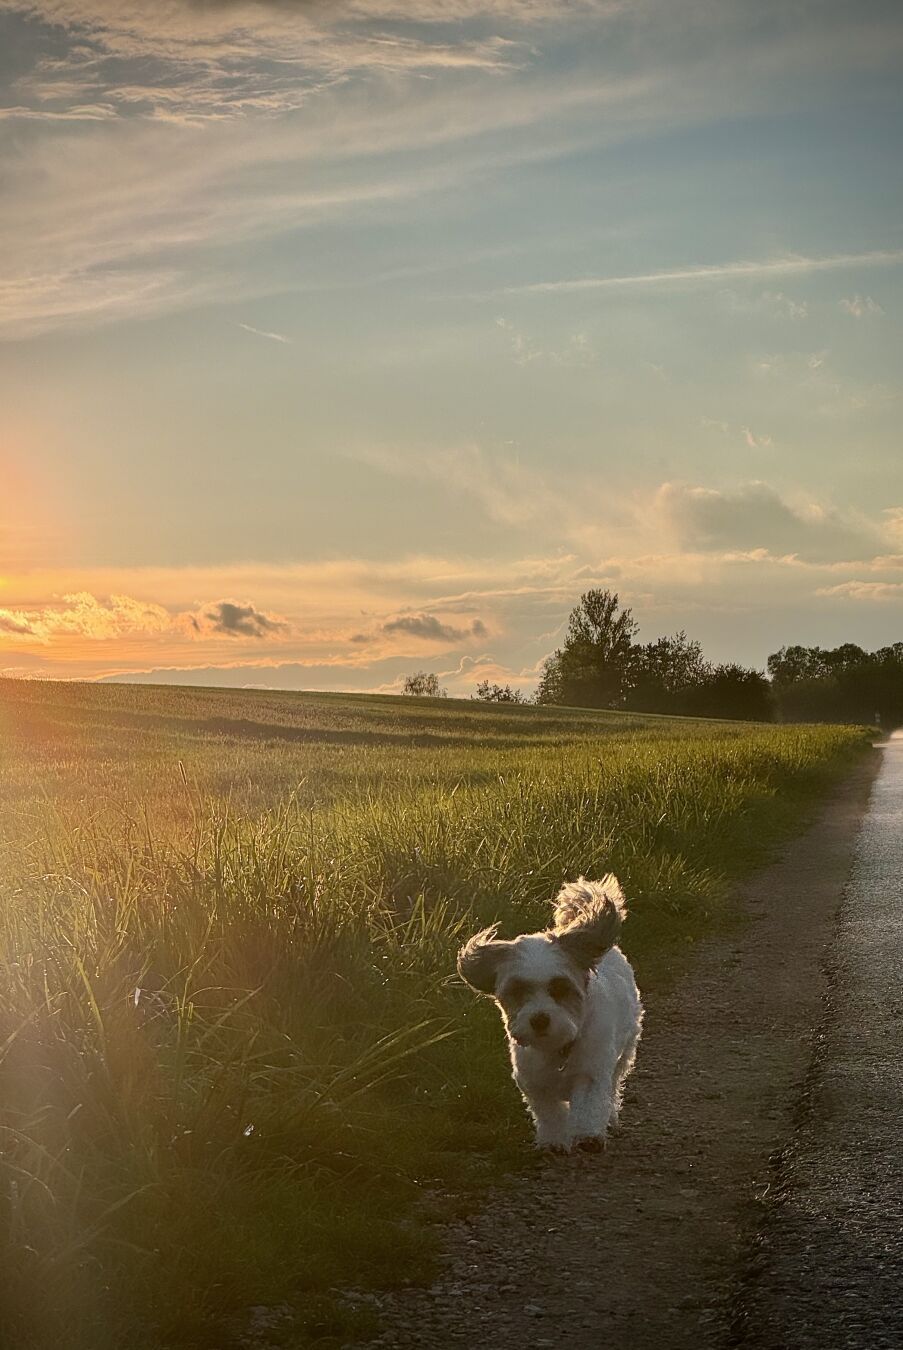 Sunset or: sunpet 😀

#photography #dogsofpixelfed